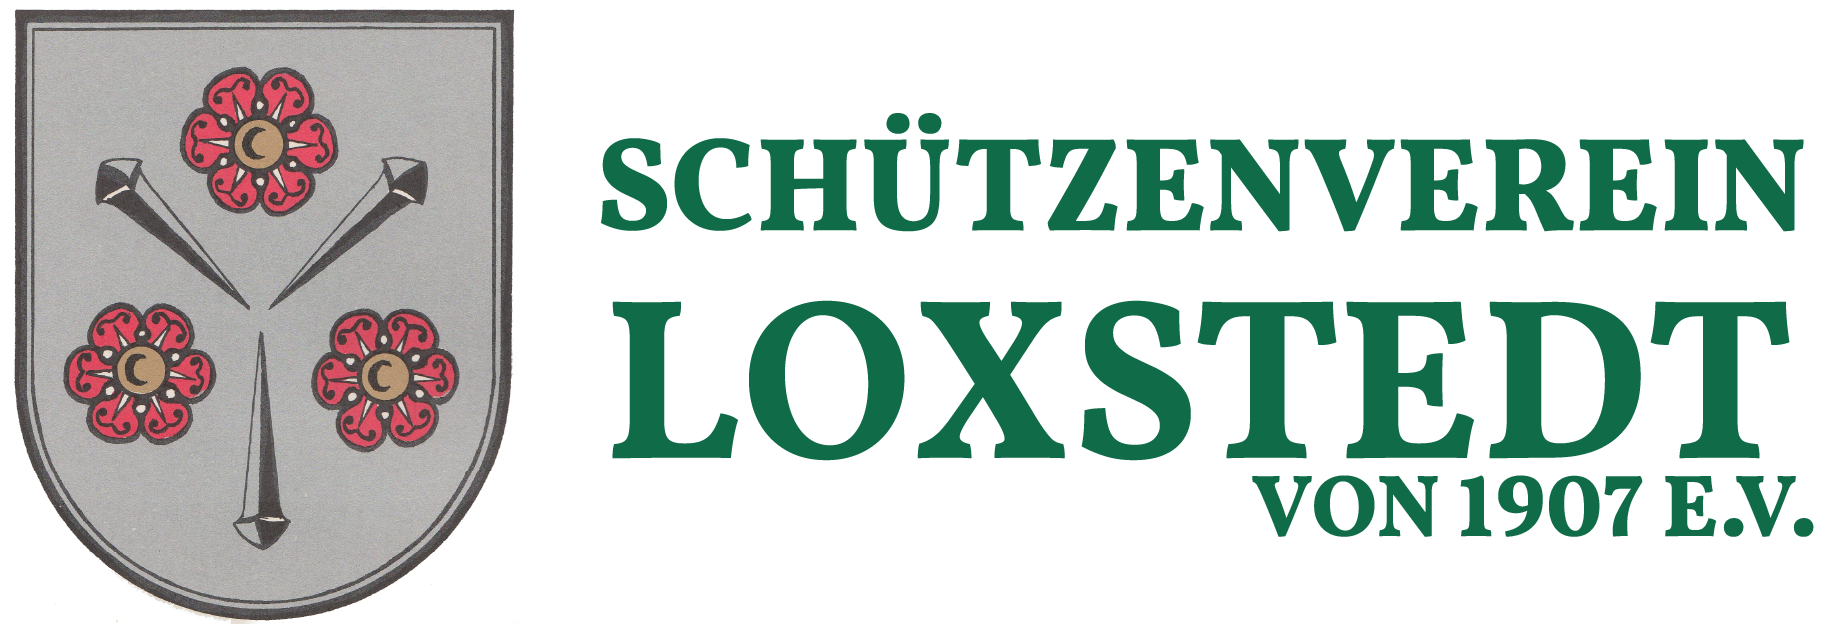 Schützenverein Loxstedt